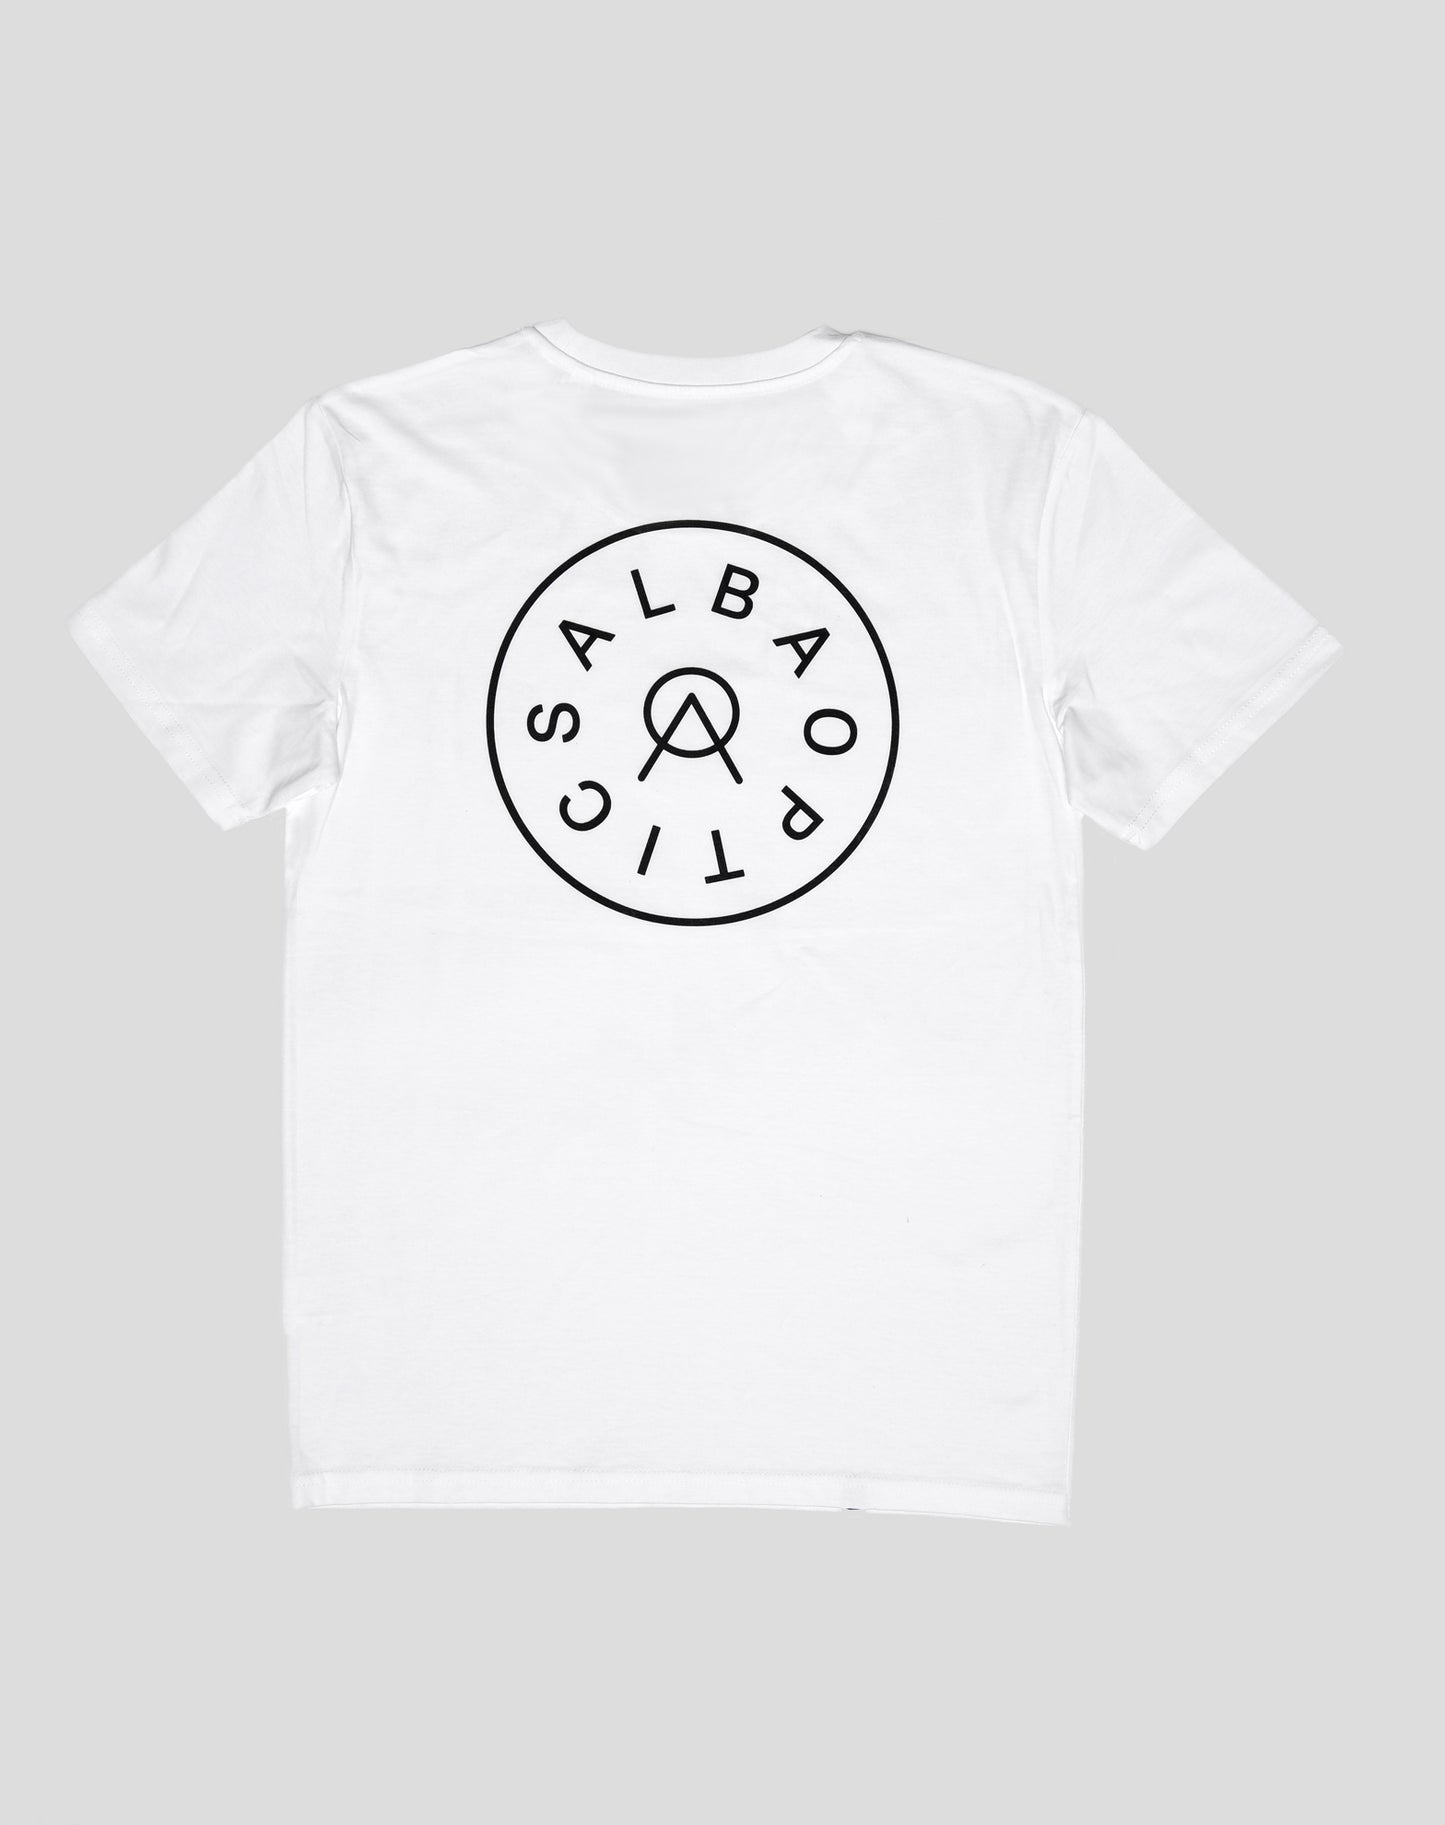 Alba Optics - T-shirt Logo L White